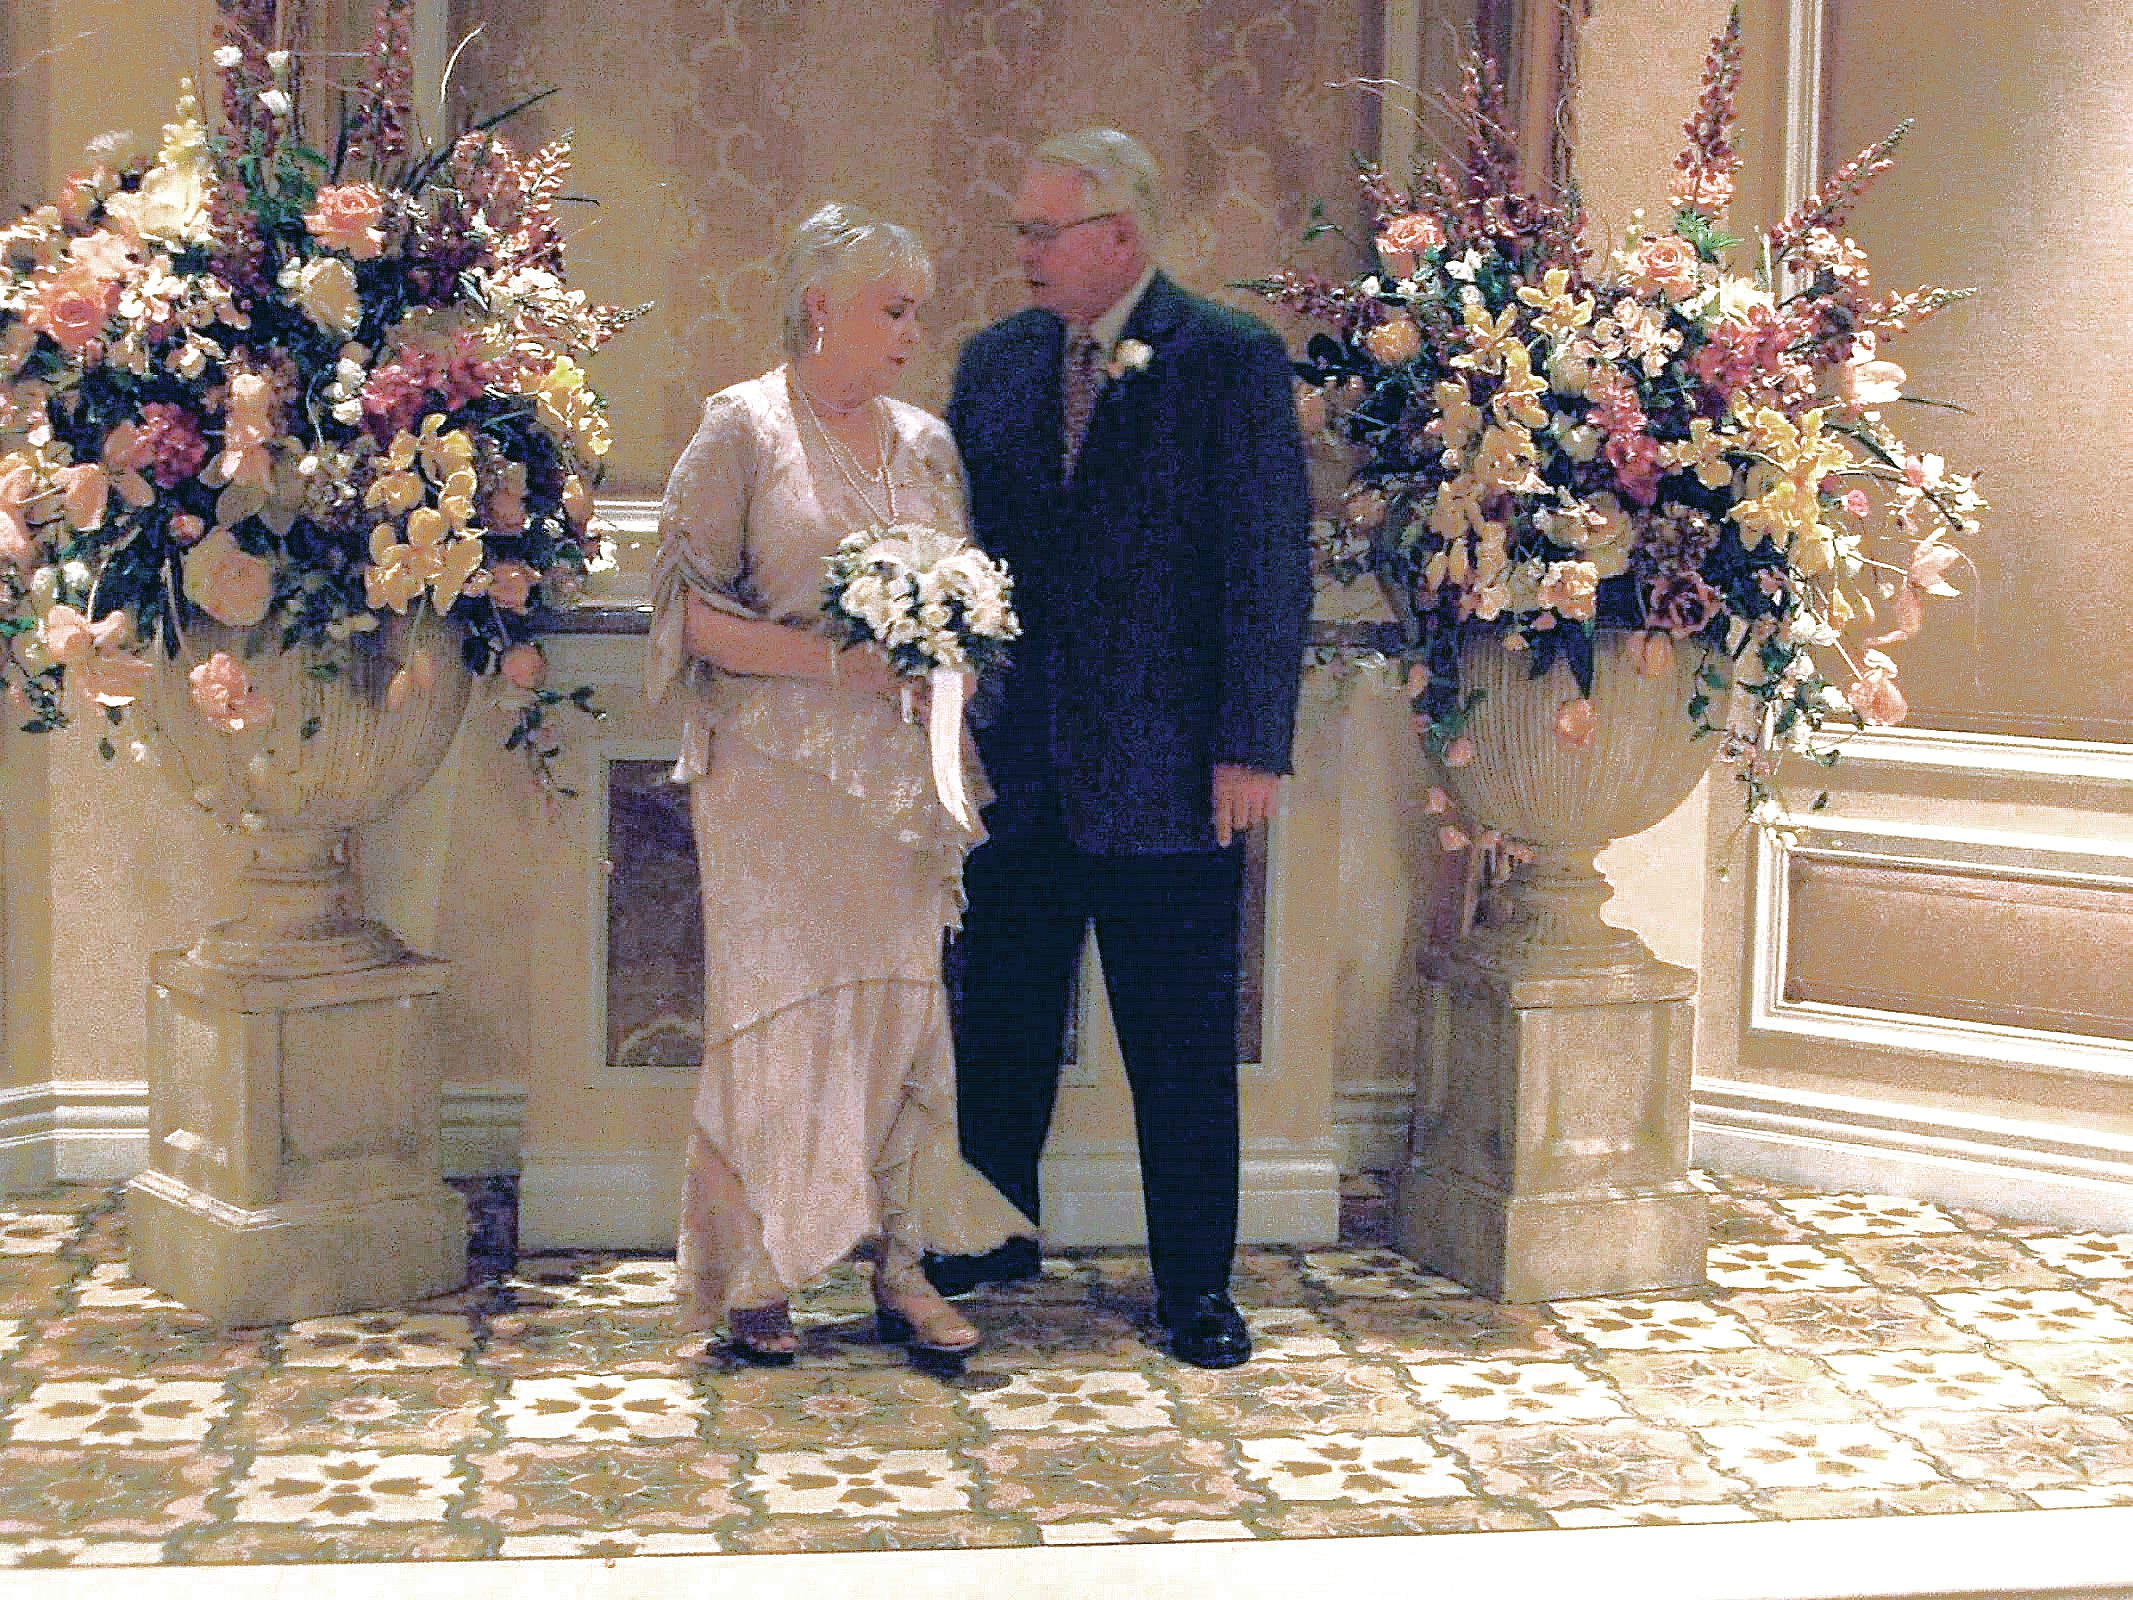 Ernie and Martha Wedding